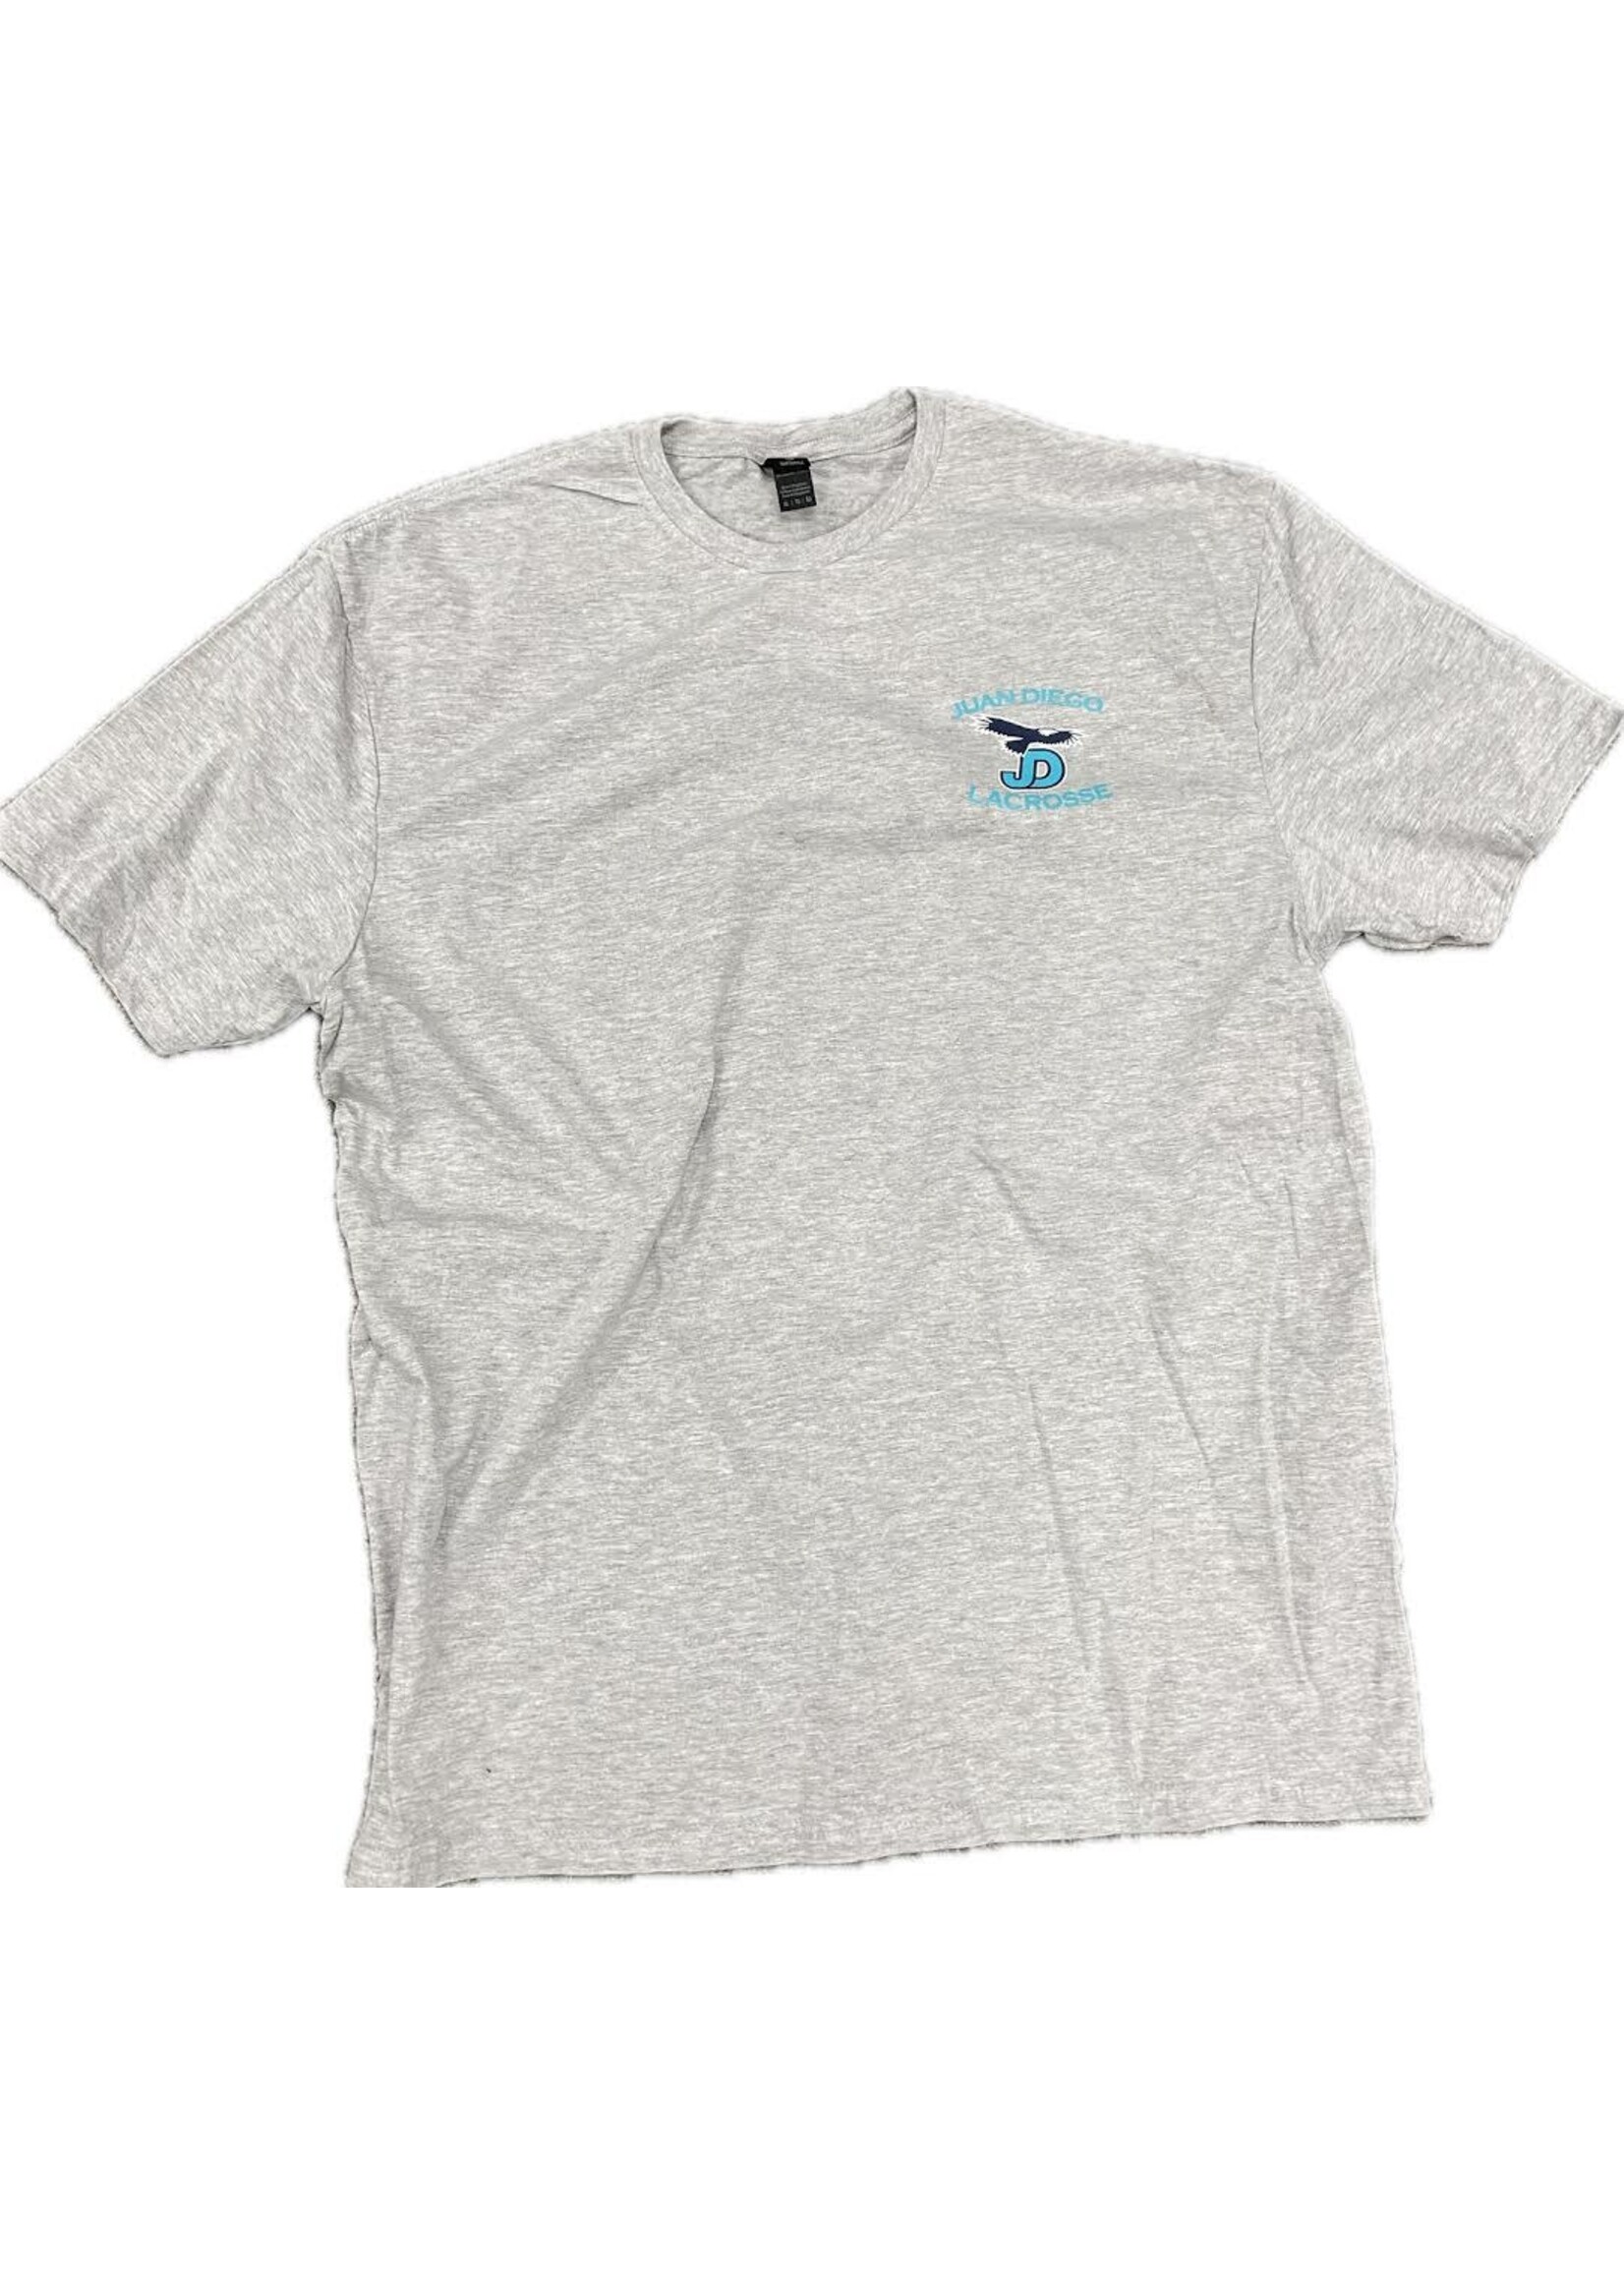 NON-UNIFORM JD Lacrosse- Spirit Shirt, unisex